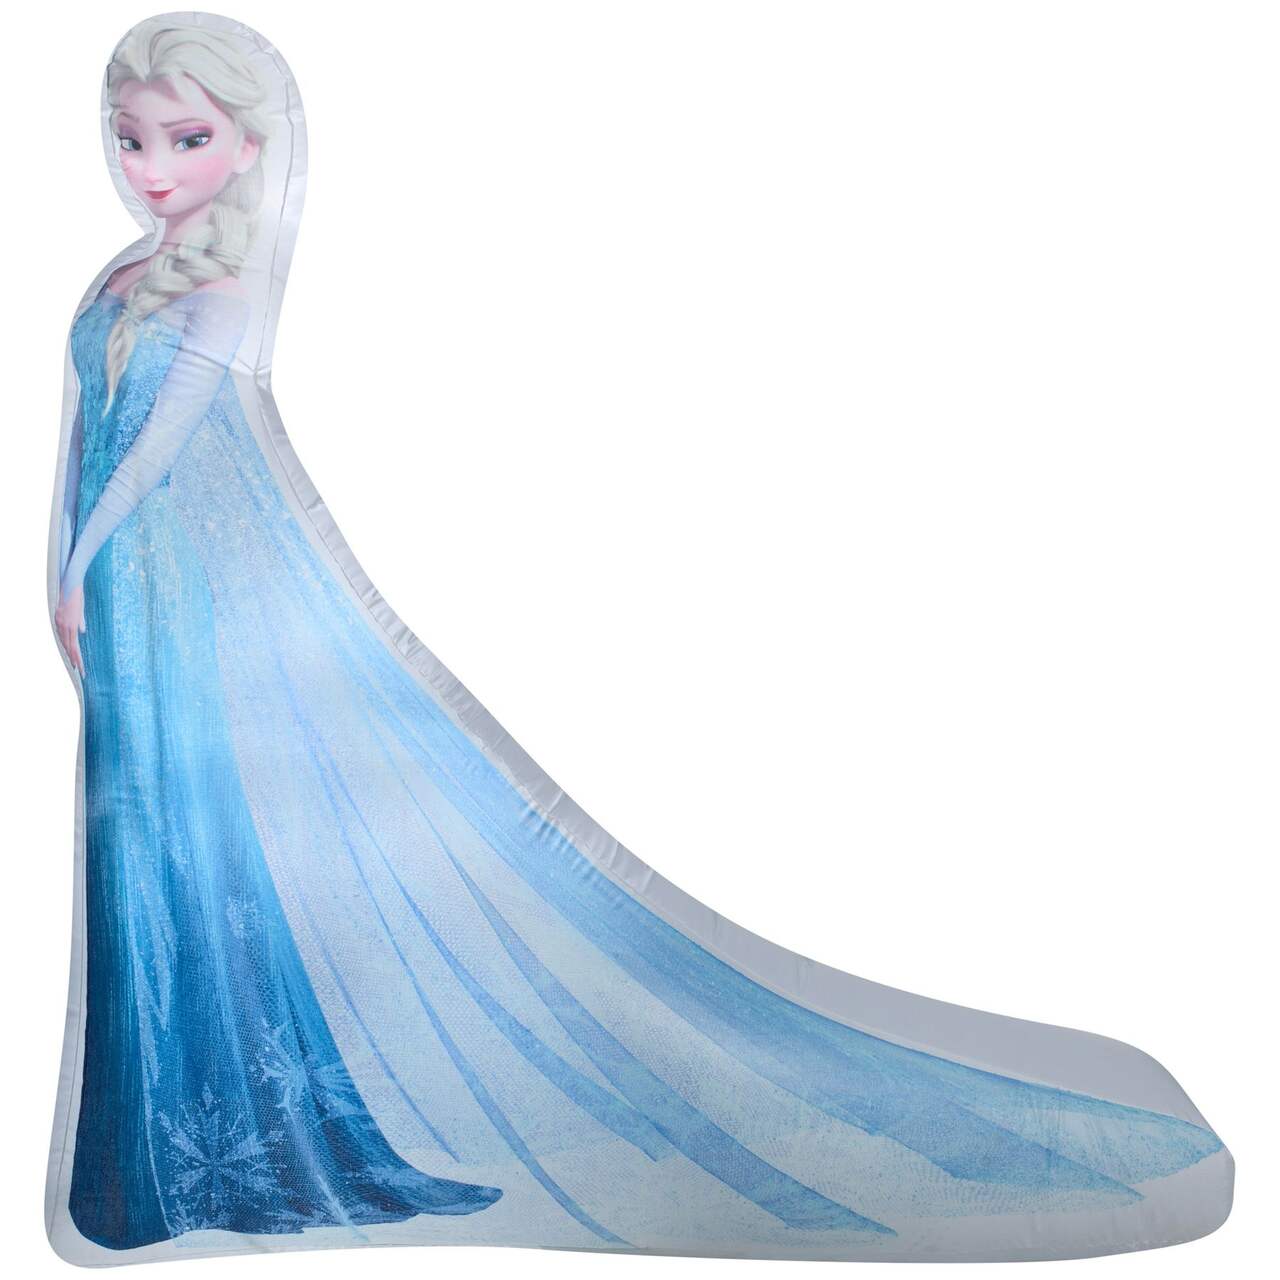 Déguisement Elsa + Accessoires Frozen La Reine des Neiges Disney 5